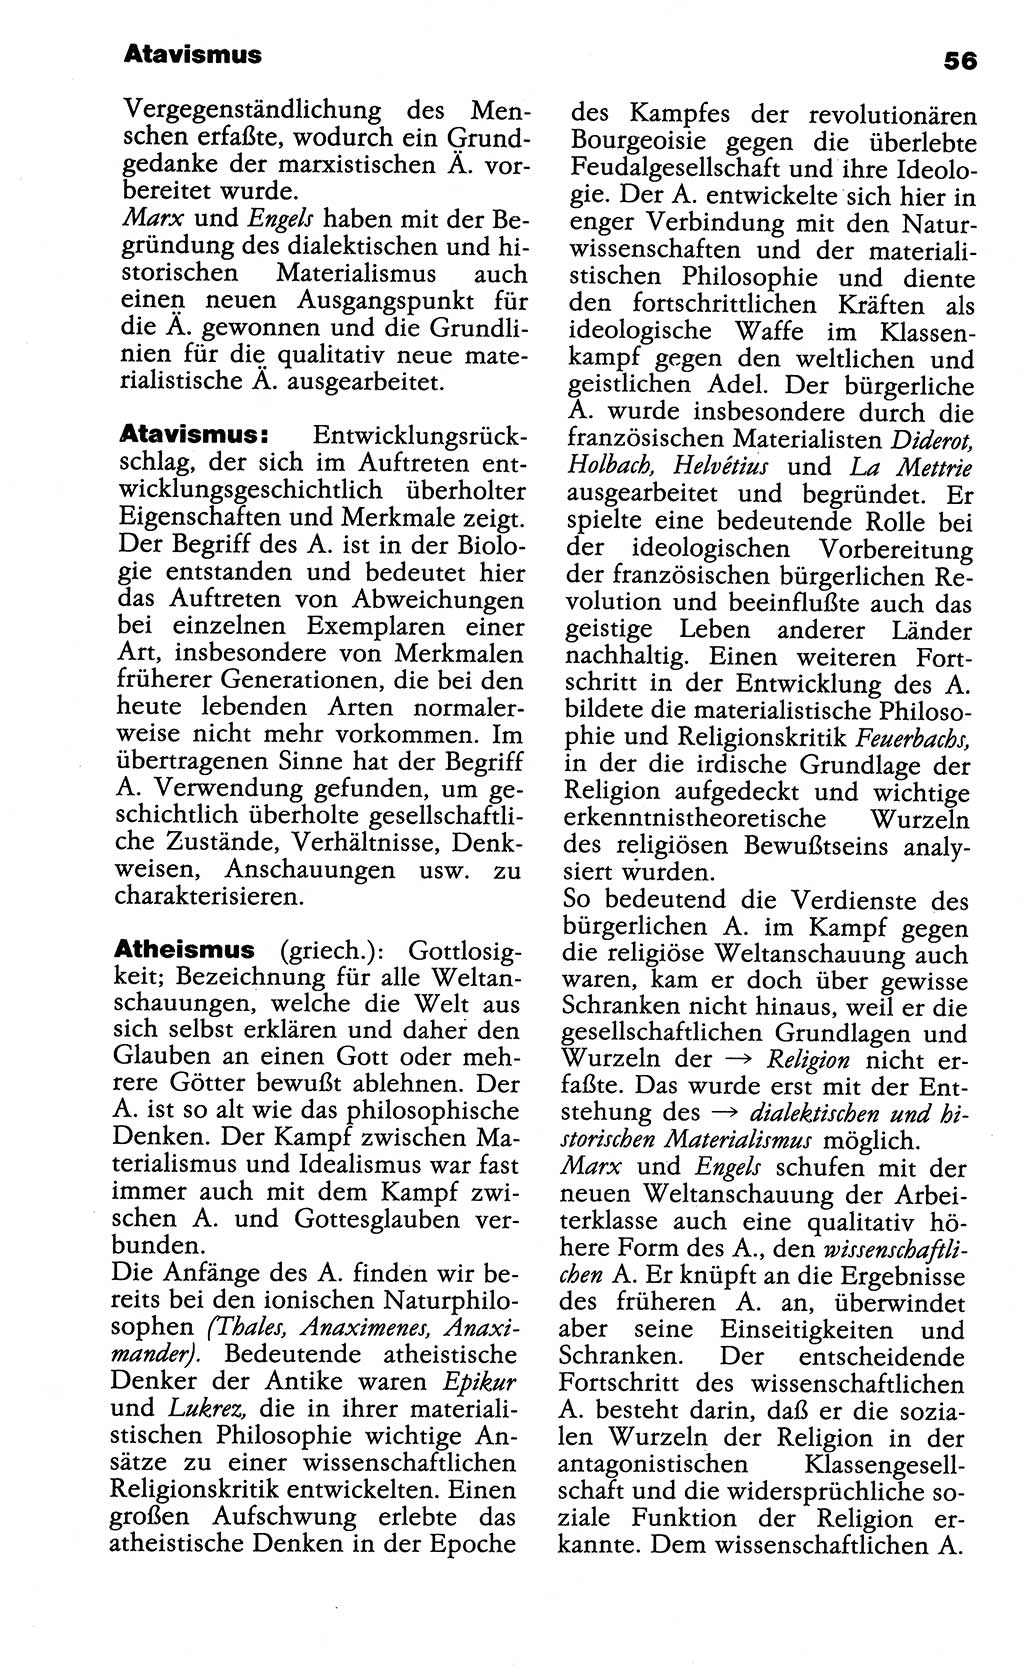 Wörterbuch der marxistisch-leninistischen Philosophie [Deutsche Demokratische Republik (DDR)] 1985, Seite 56 (Wb. ML Phil. DDR 1985, S. 56)